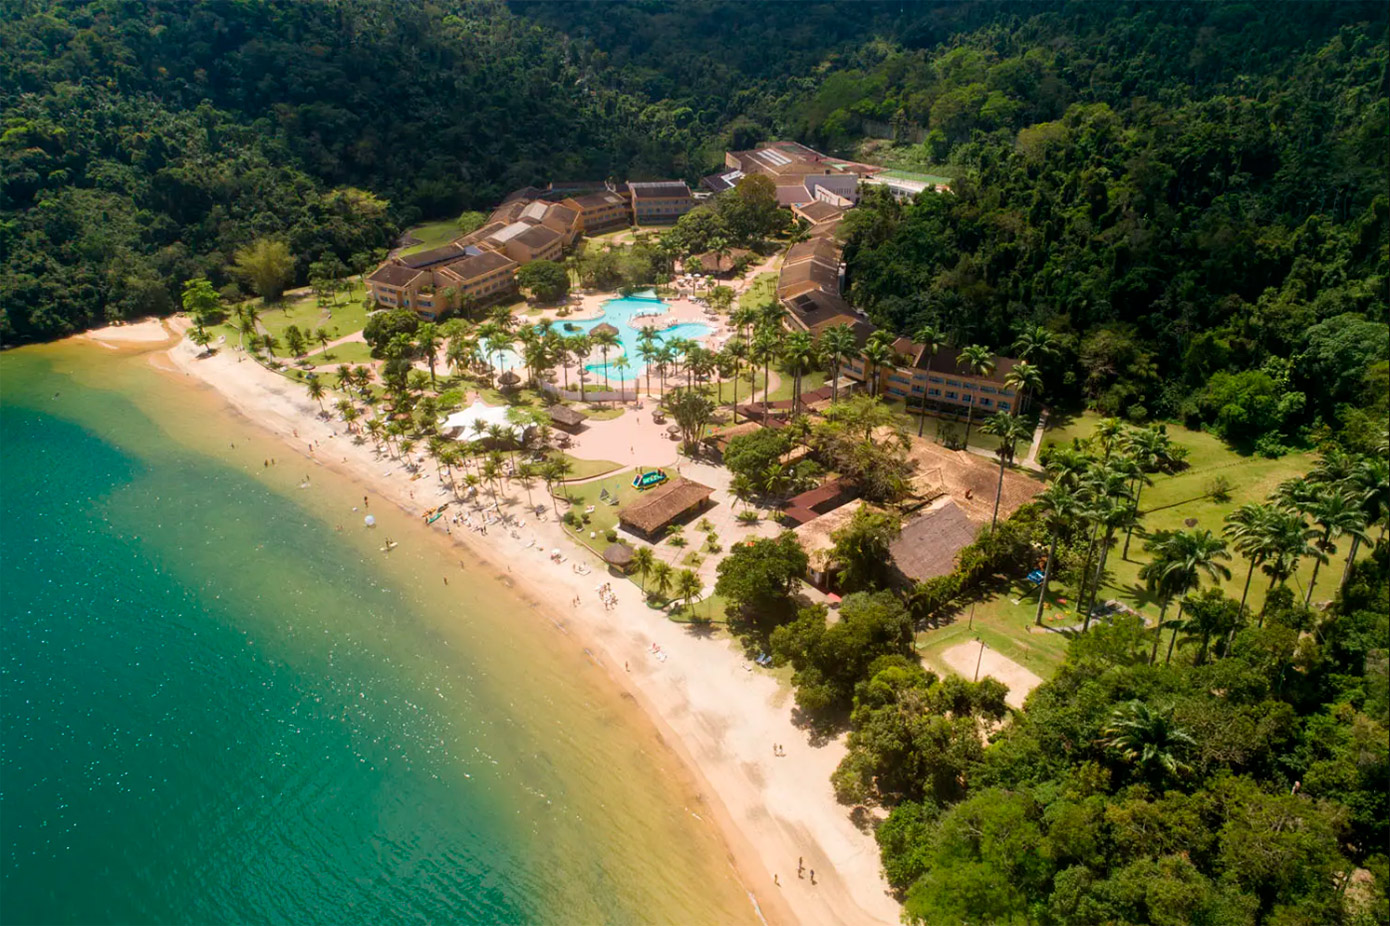 Vila Galé Eco Resort de Angra dos Reis - RJ